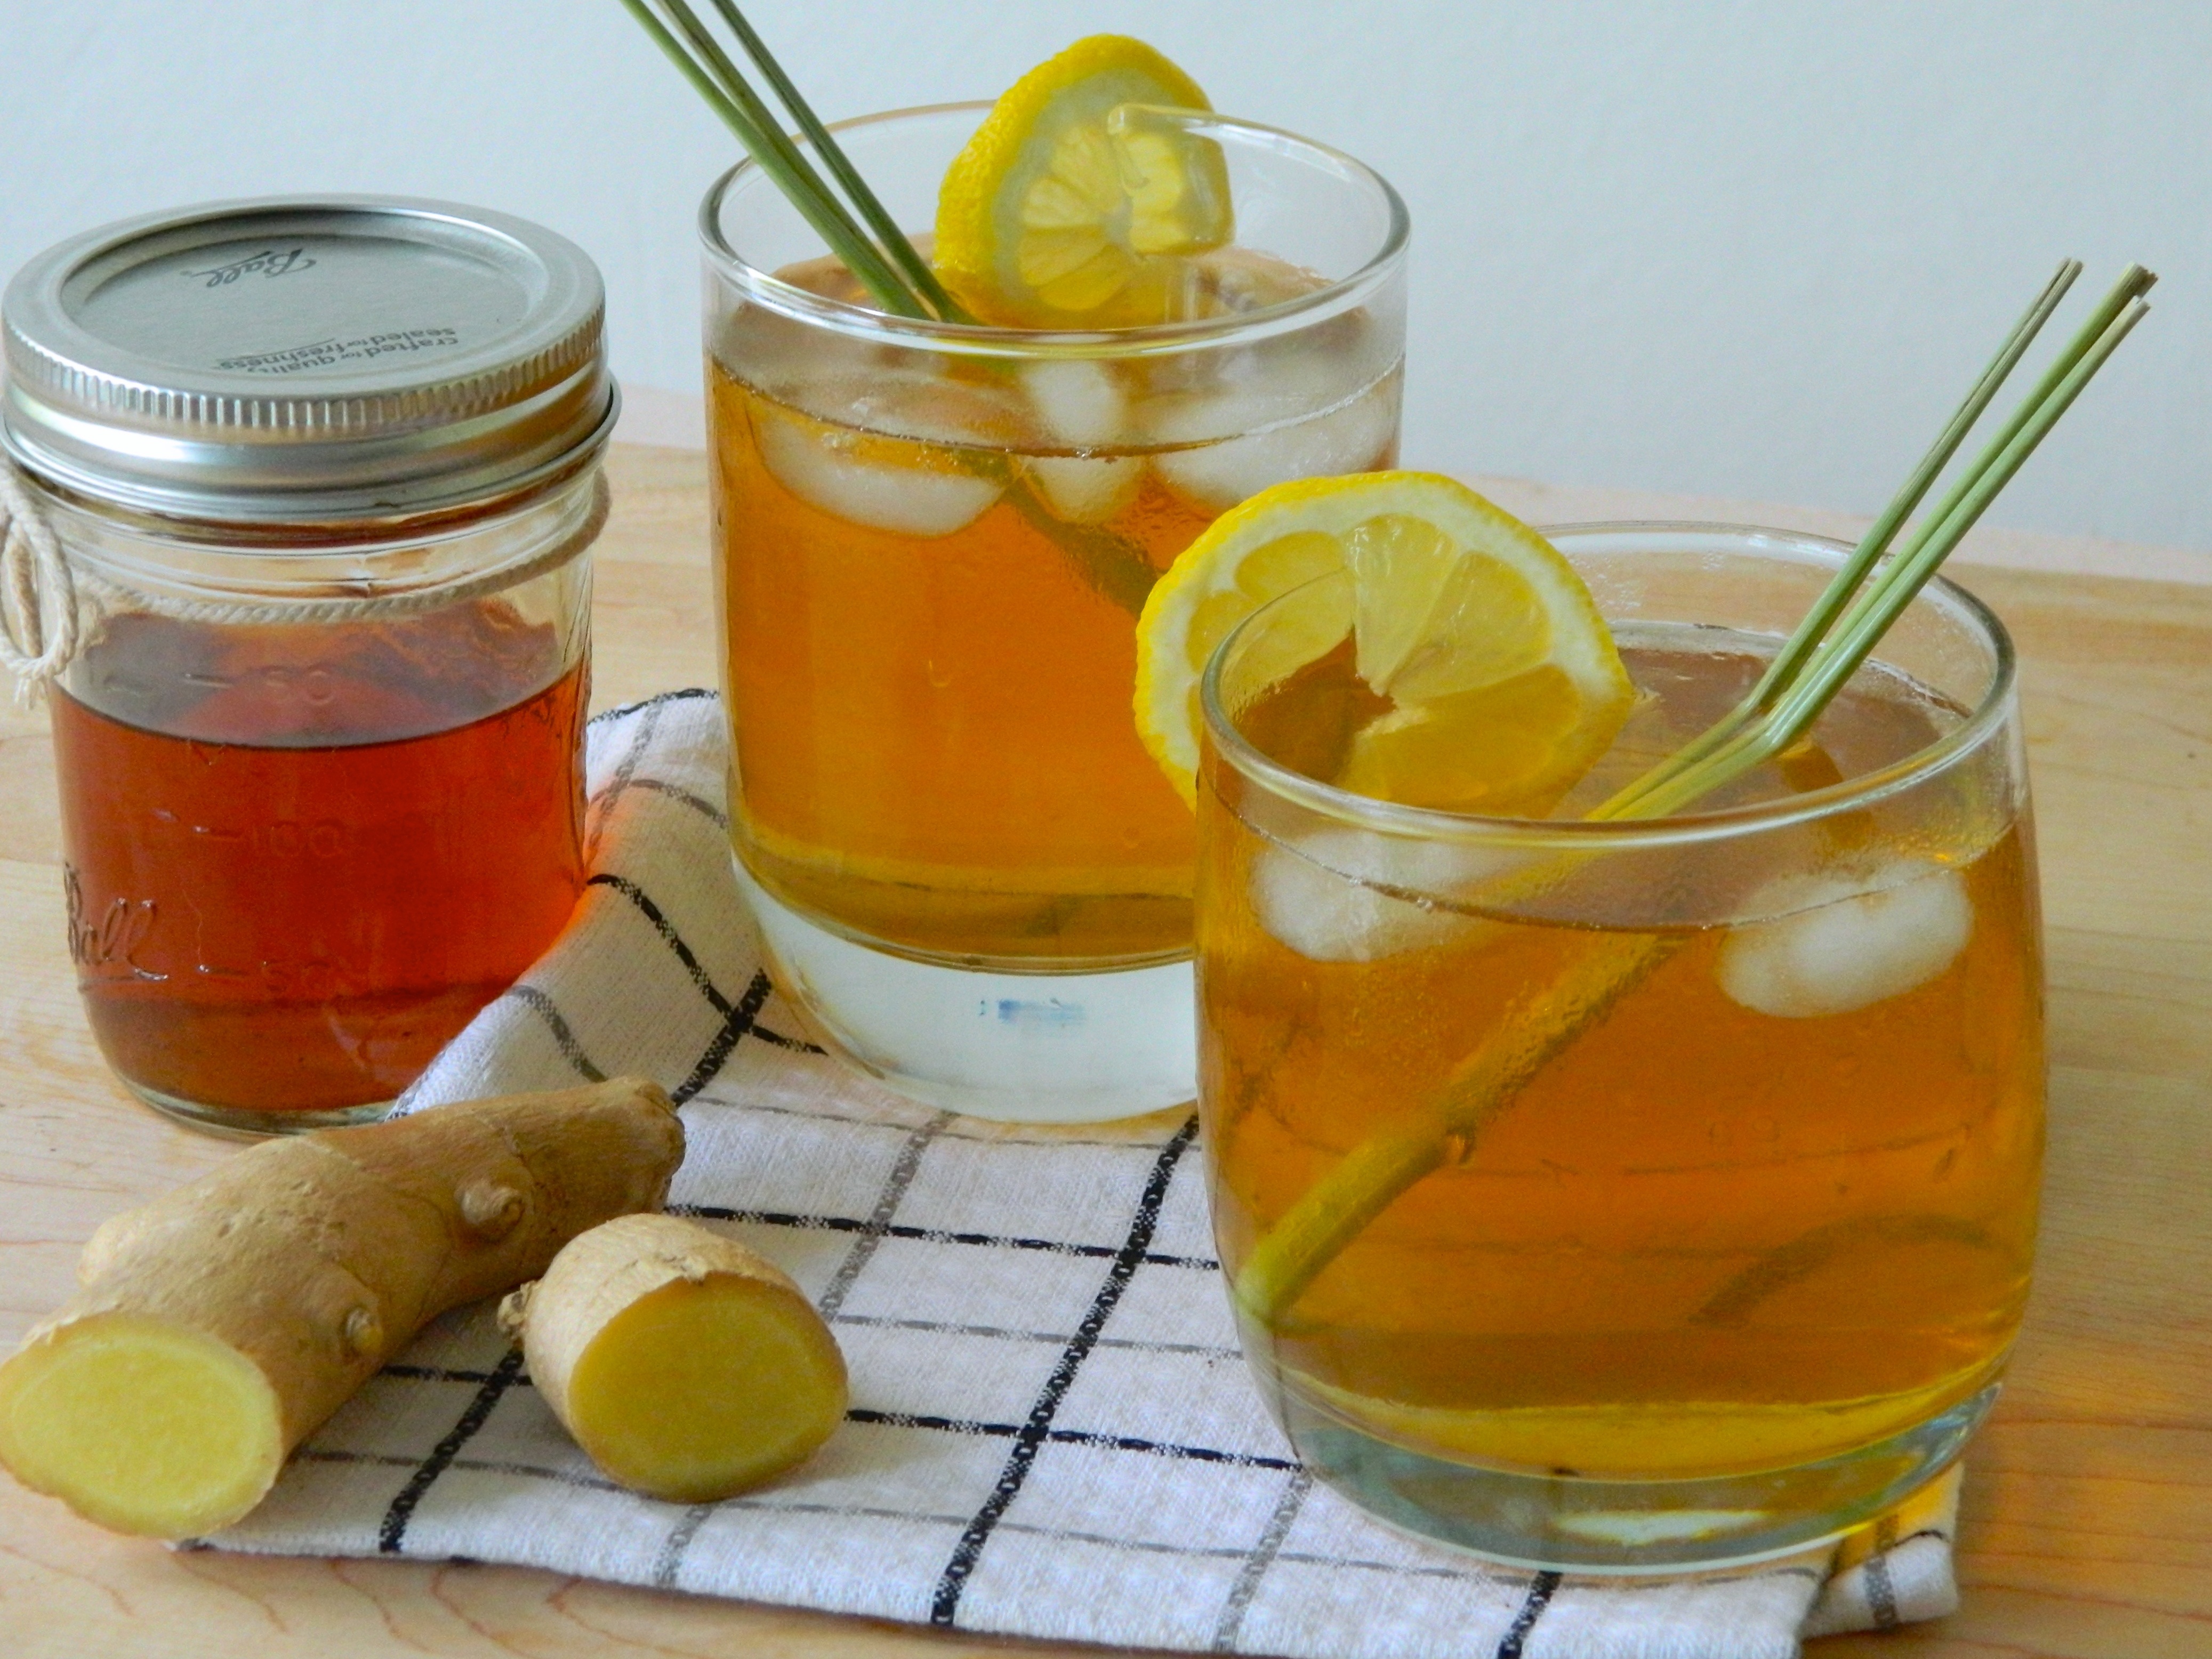 Sử dụng kèm các đồ uống như: Nước đường, mật ong, sữa... có công dụng giải rượu